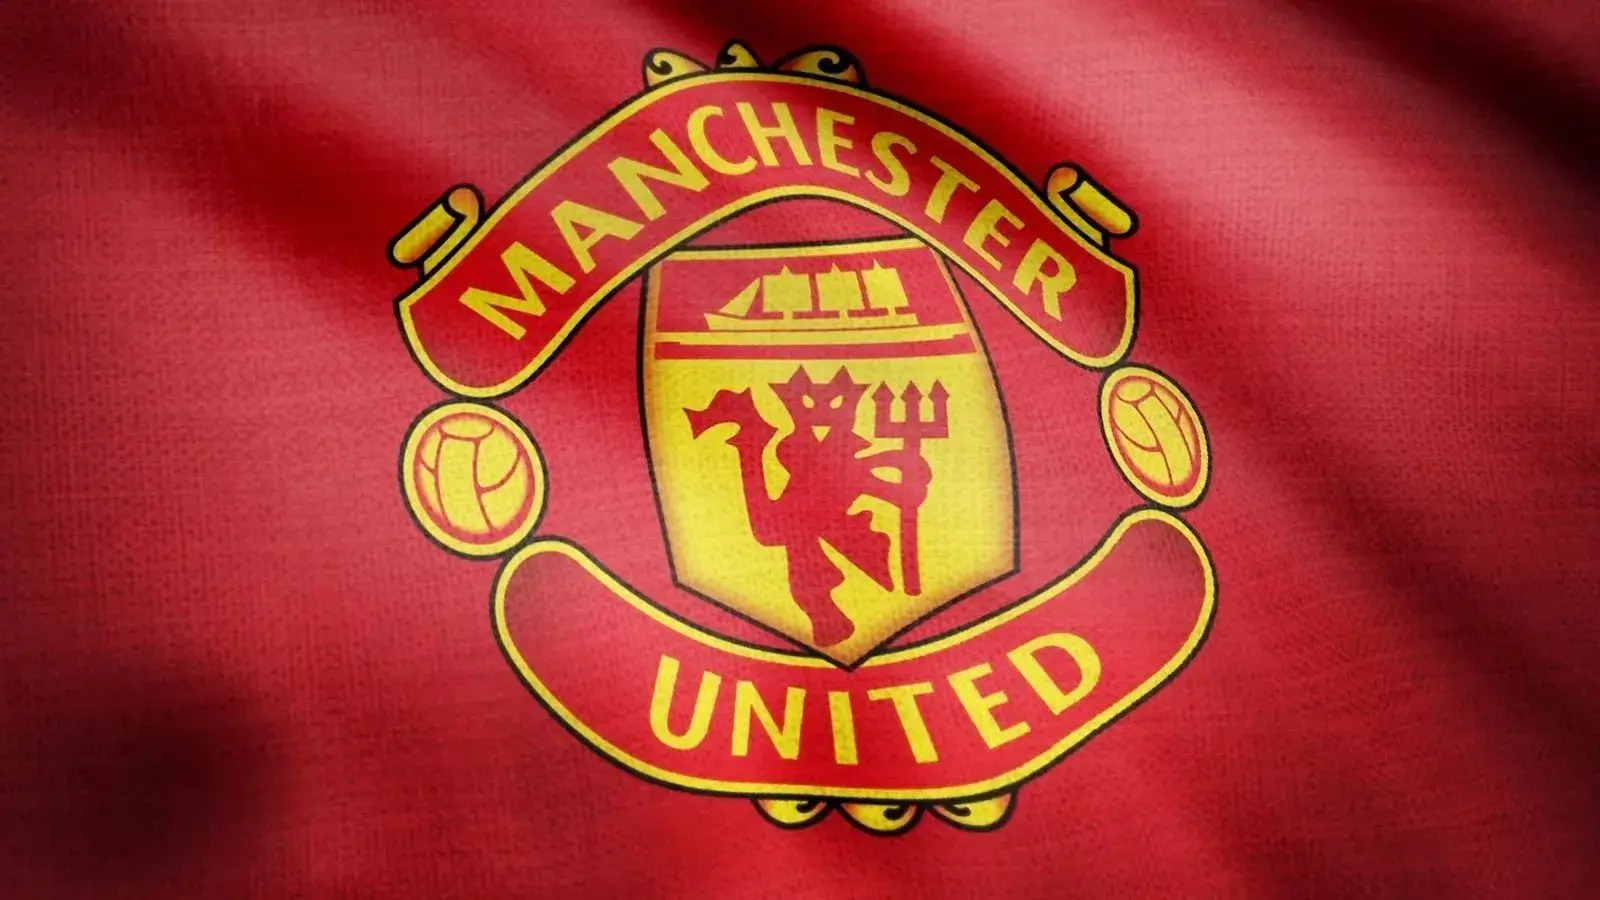 Câu lạc bộ bóng đá Manchester United - Đội bóng huyền thoại của nước Anh